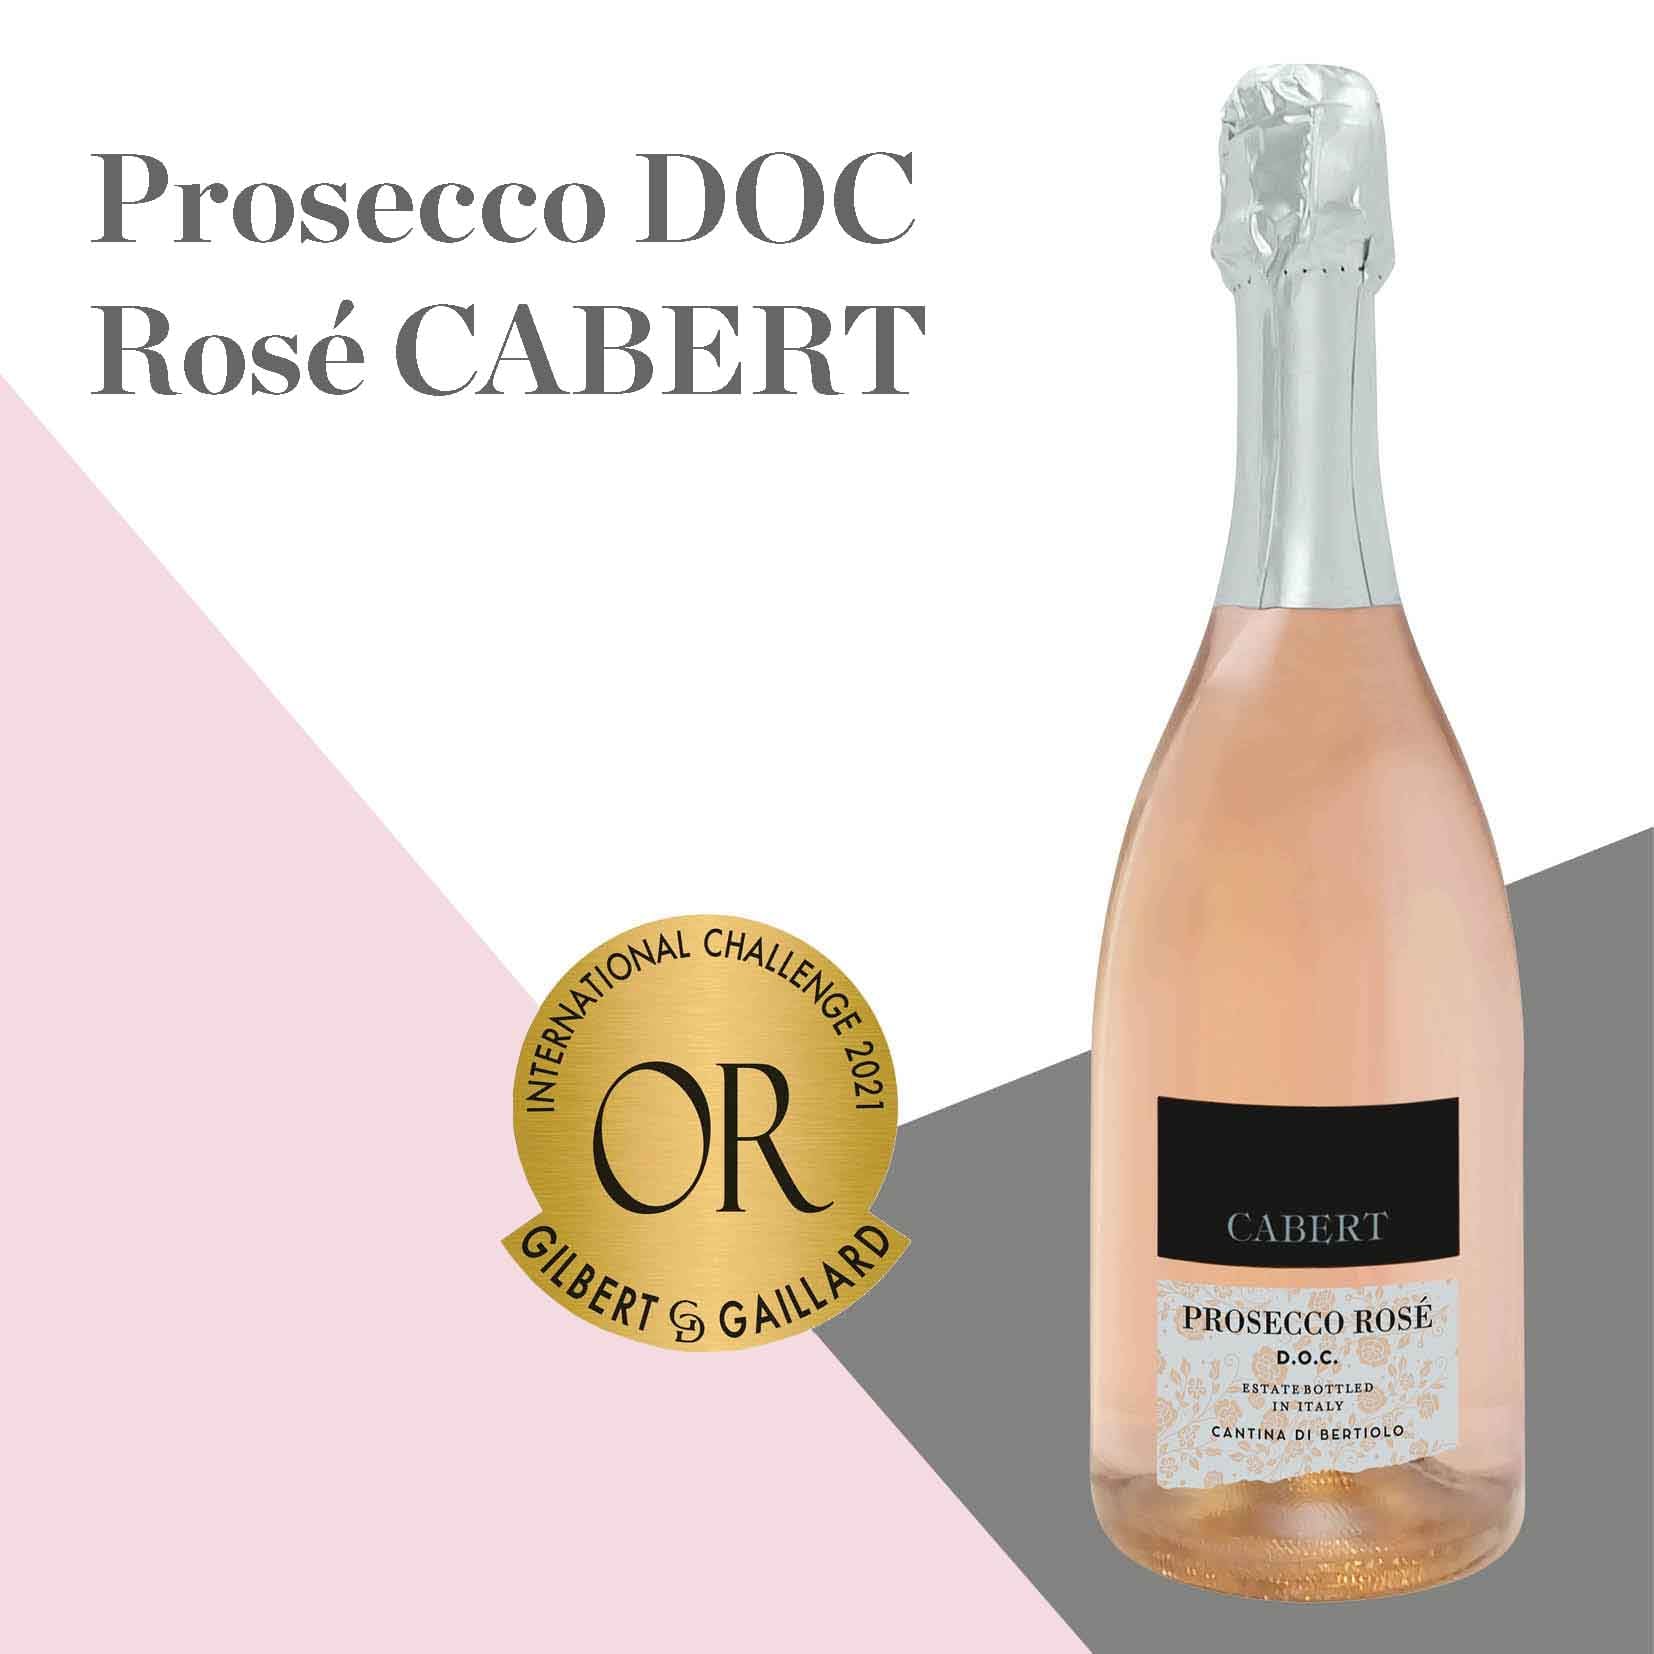 Bottle of Prosecco DOC Rosé Cabert